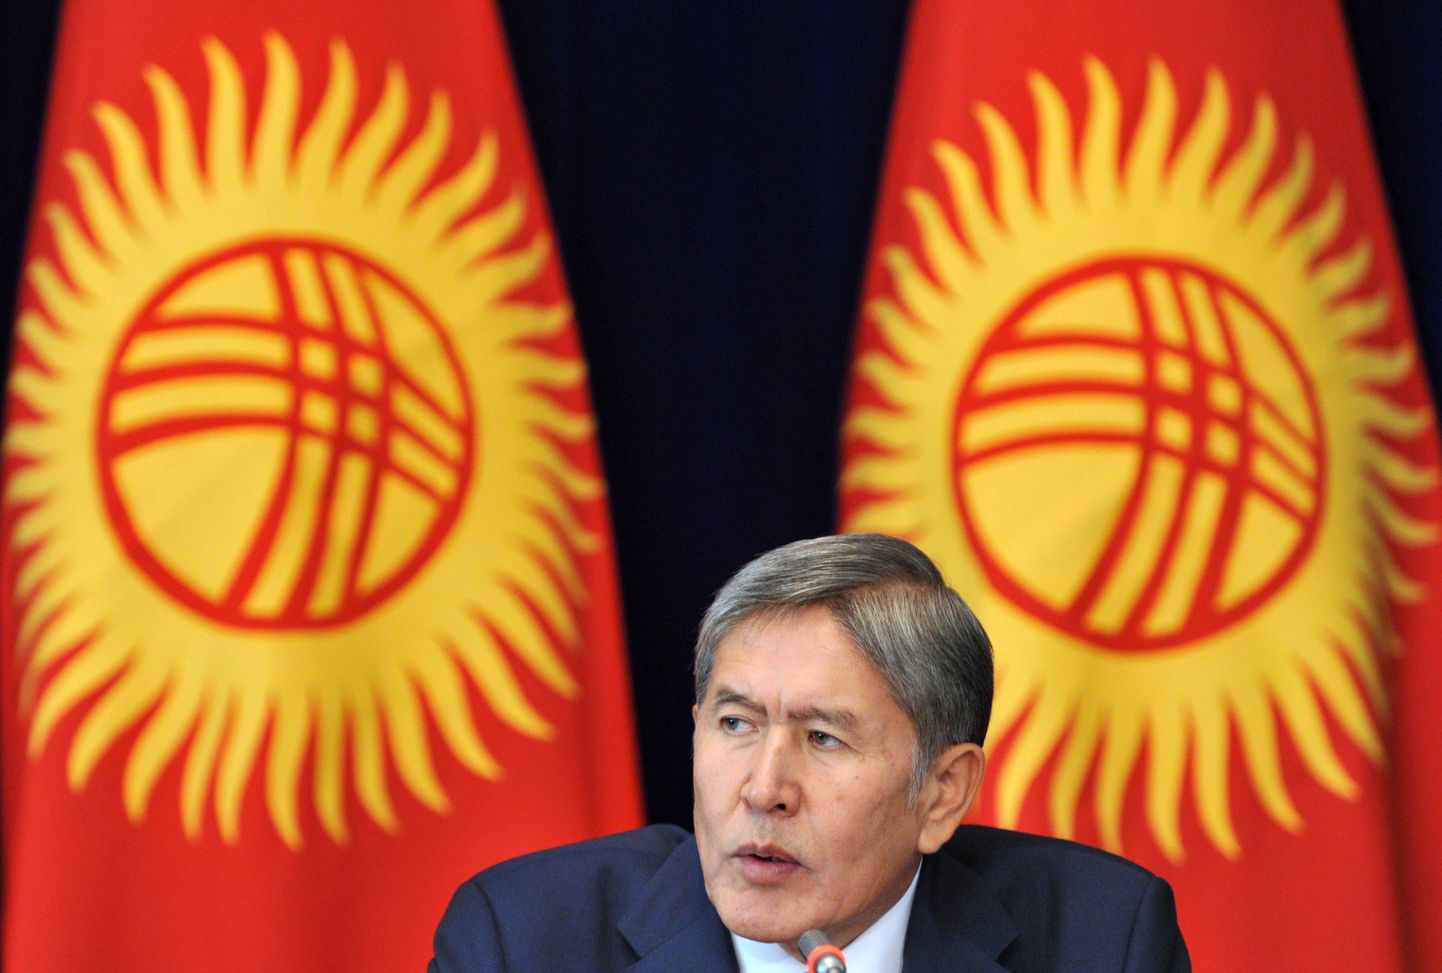 Kõrgõzstani eksjuht Almazbek Atambajev.